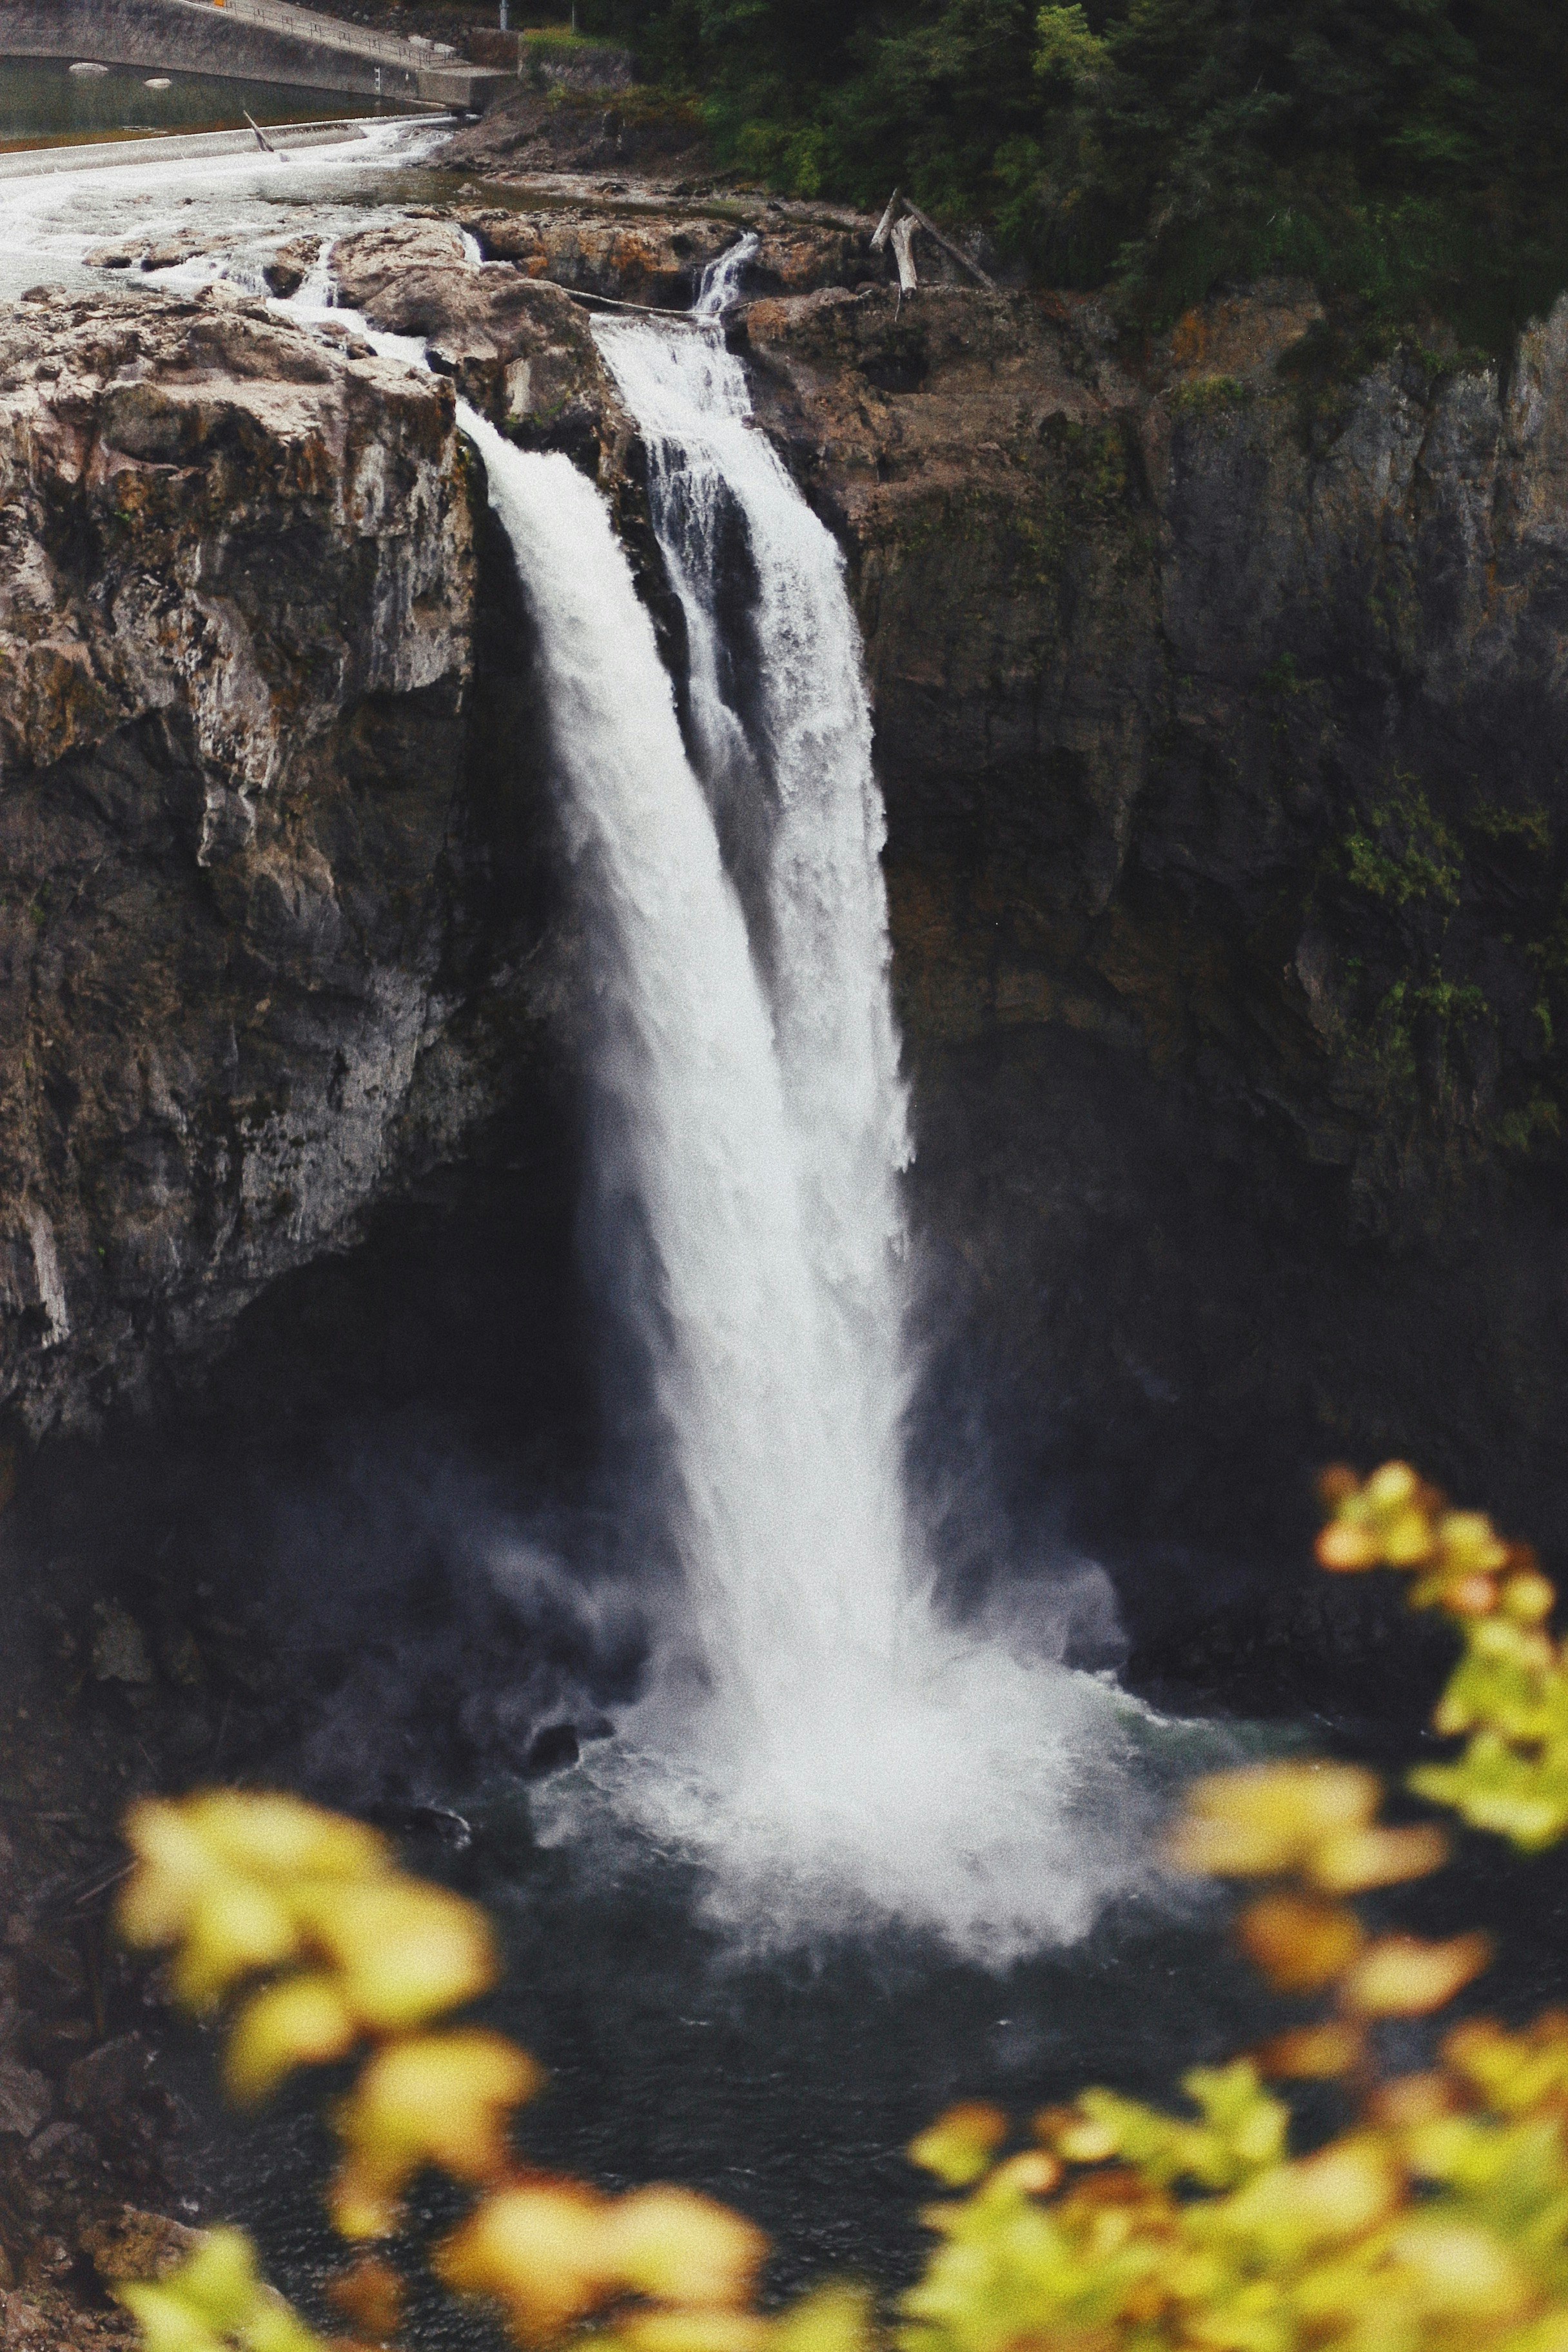 waterfalls during daytime